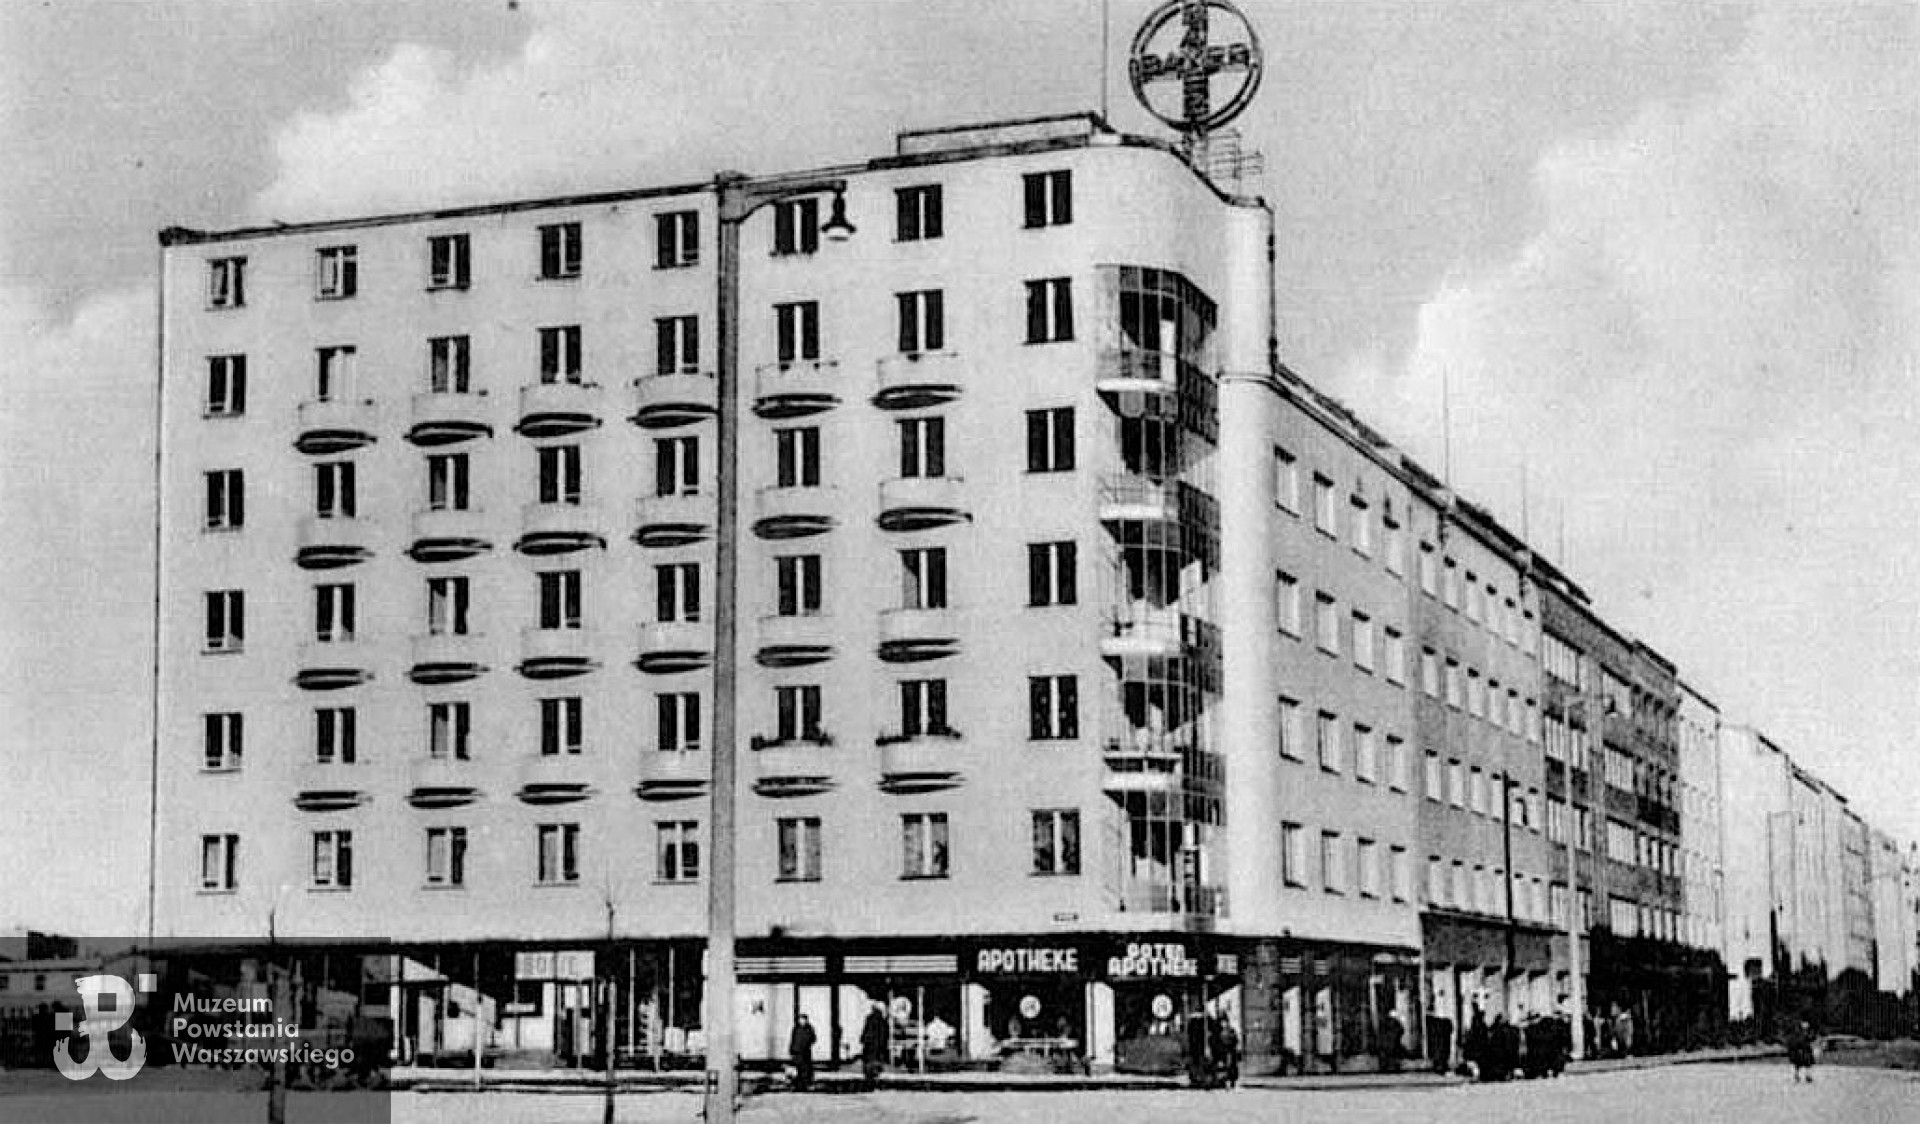 Kamienica przy ul. Świętojańskiej 122 w Gdyni,  źródło SARP Gdynia. Budynek został zbudowany w latach 1936-1937 r. dla mecenasa Antoniego Ogończyka-Blocha i architekta Leona Mazalona, który był także współautorem projektu (wraz ze Stefanem Kozińskim). To jedna z najbardziej oryginalnych kompozycji architektonicznych dwudziestolecia międzywojennego, nie tylko w skali gdyńskiej. Jej autorzy inspirowali się ekspresjonistycznymi realizacjami architektów szkoły amsterdamskiej, z tą jednak różnicą, że zamiast fasady ceglanej, zaprojektował tu jasną, odbijającą światło.